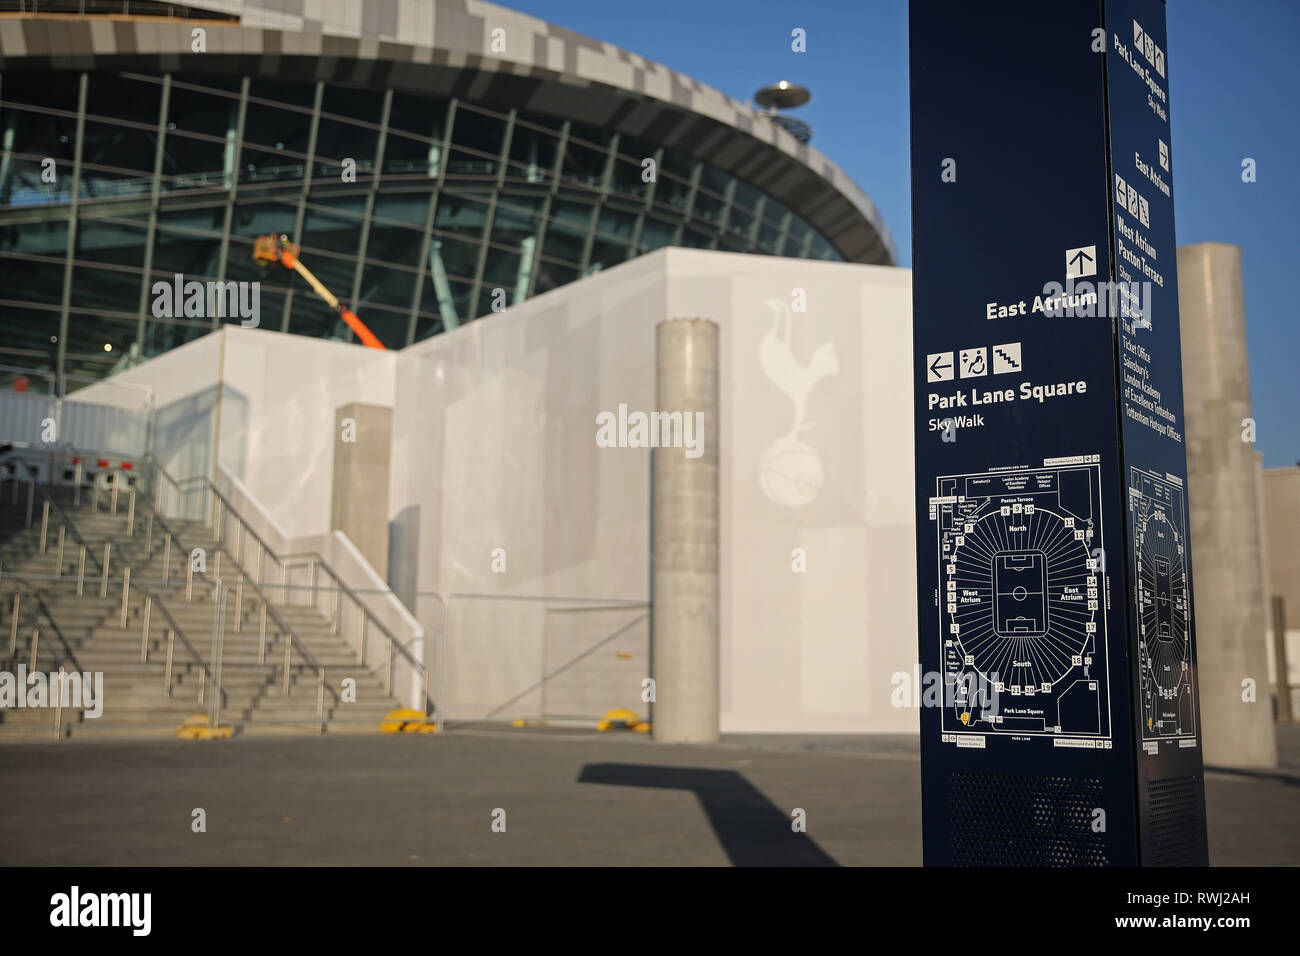 Allgemeine Ansicht des neuen Stadions und Beschilderung - Tottenham Hotspur neue Stadion Entwicklung, White Hart Lane, London - 27. Februar 2019 Stockfoto